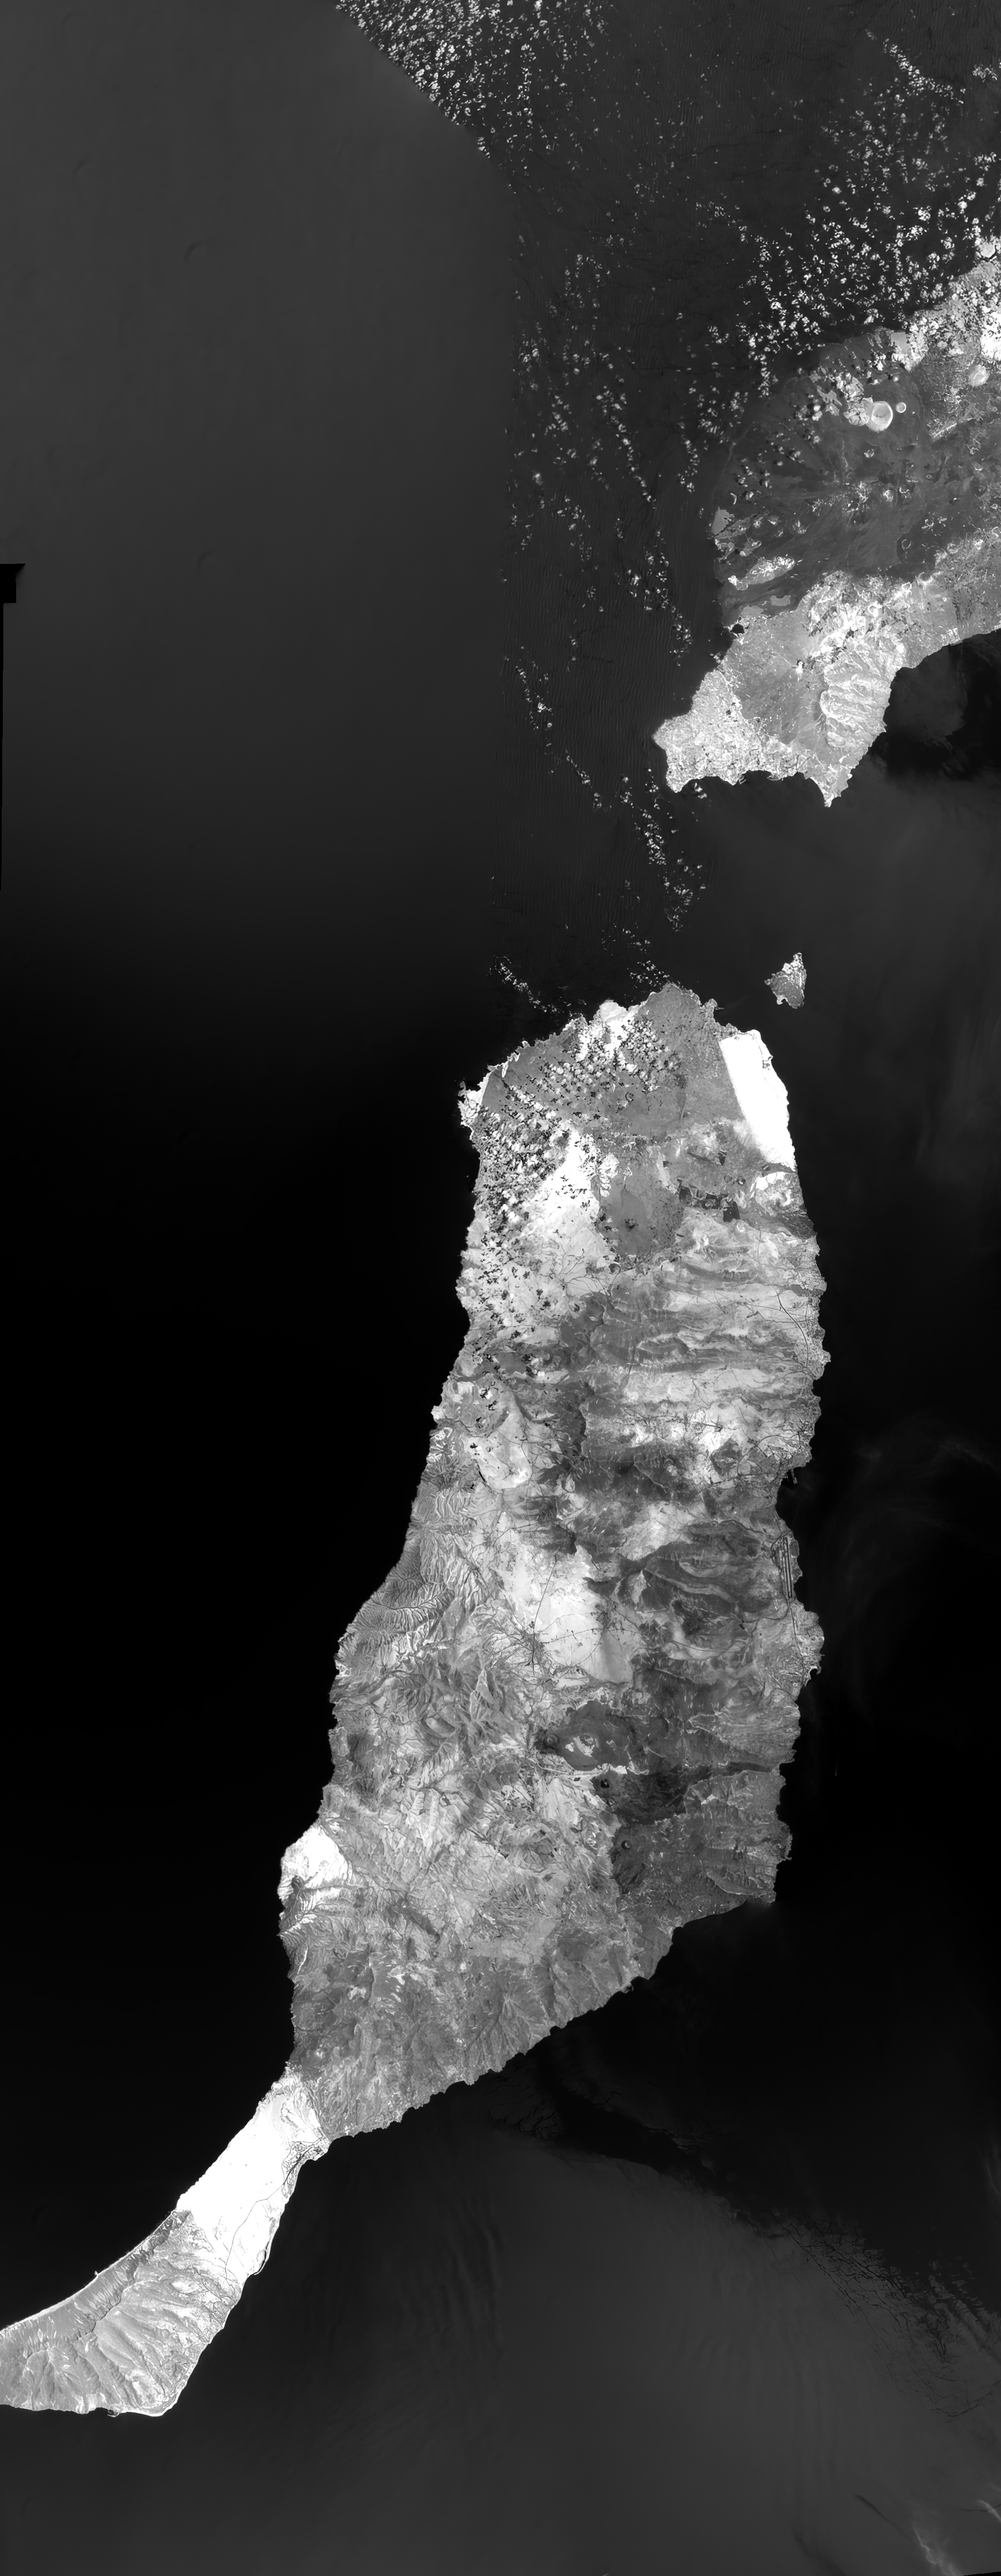 Imagen de Fuerteventura y Lanzarote tomada por DRAGO-2 desde el espacio.